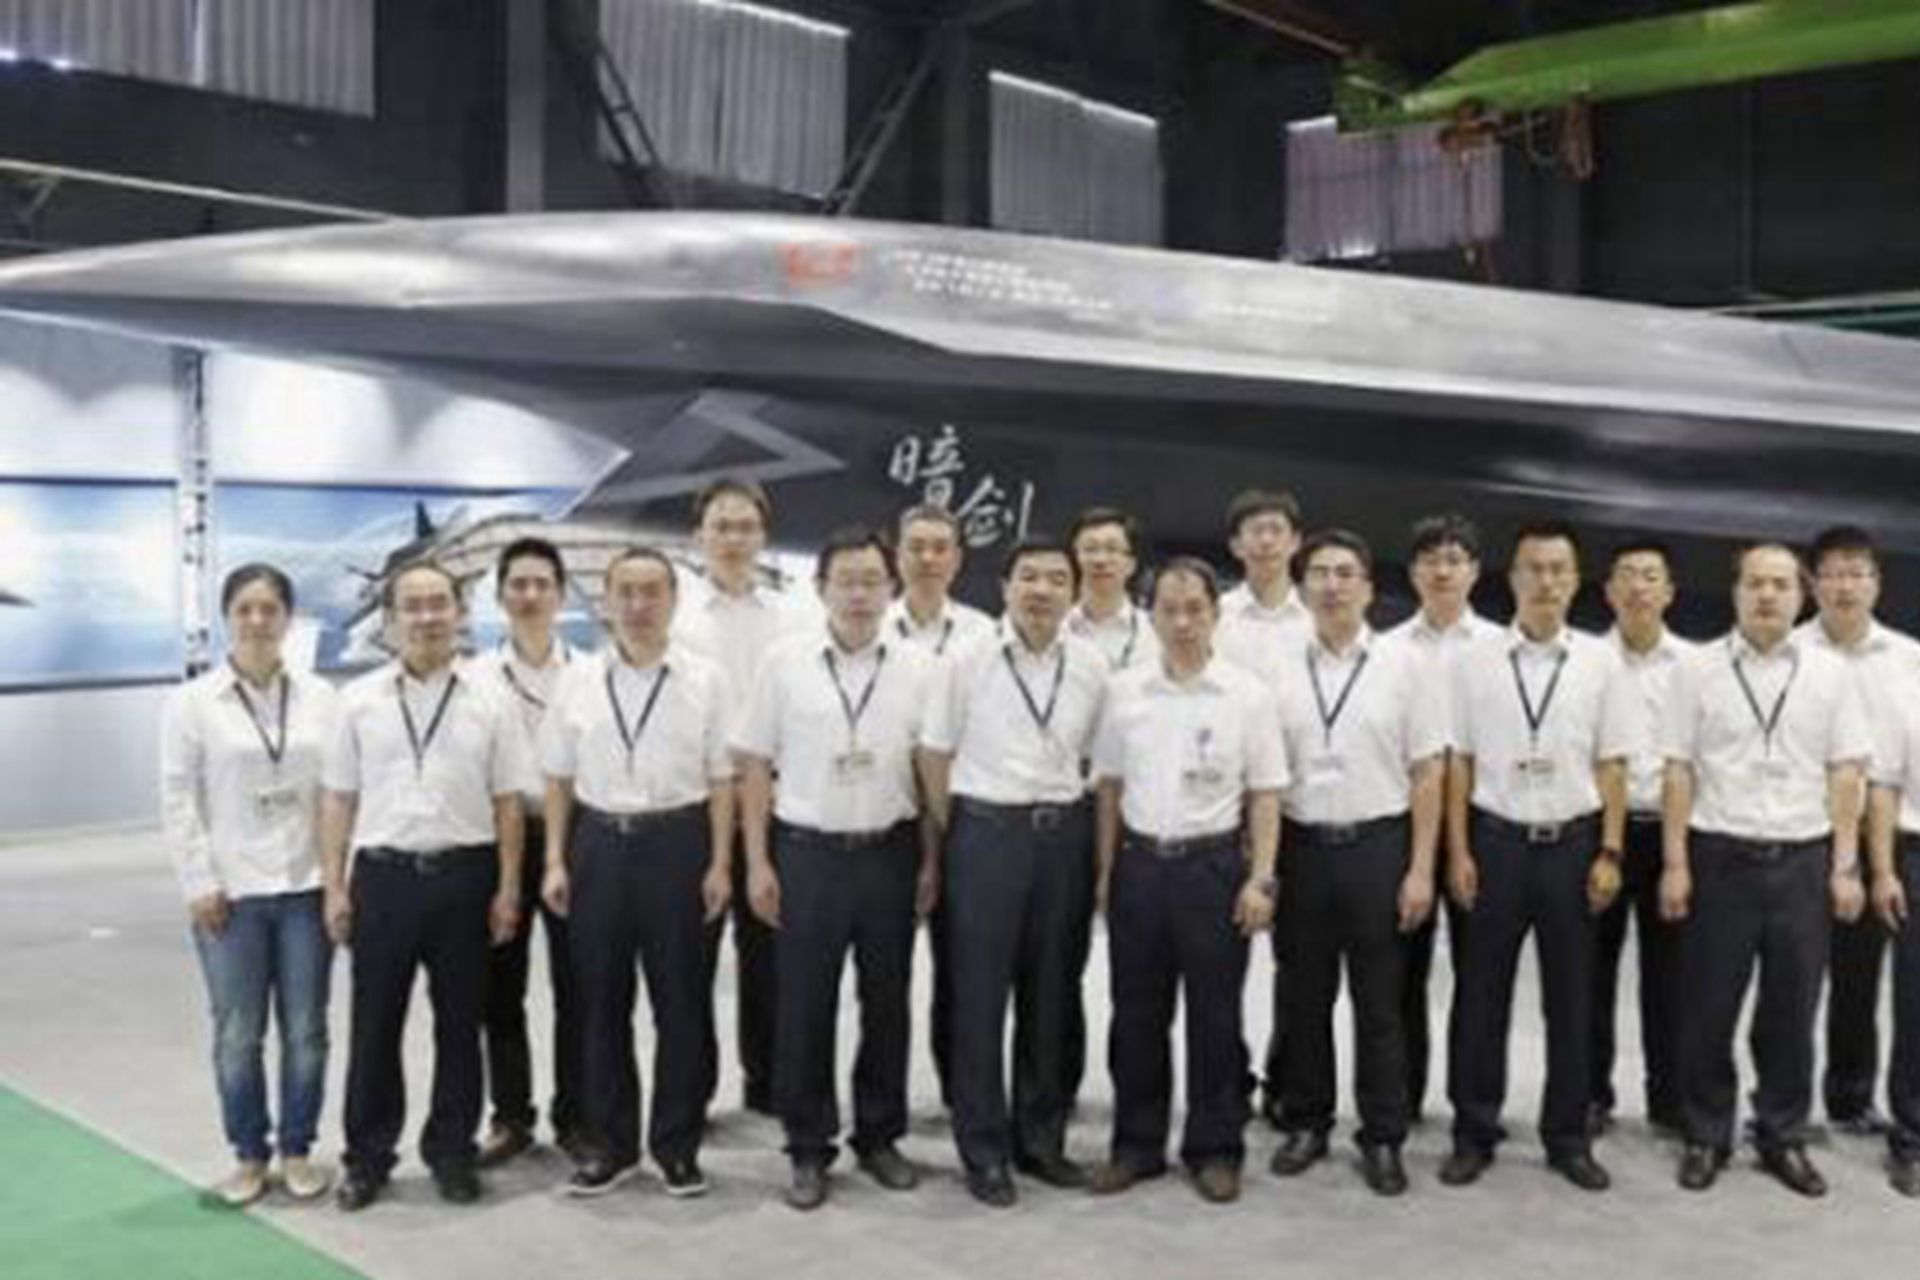 中国研制多型无人机。图为“暗剑”无人机，长13米，最大起飞重量10吨，最大速度2马赫，最大过载12G，作战半径1,000公里，载弹量1.5吨，弹舱可挂载PL-15、PL-10空空导弹。（鼎盛军事）